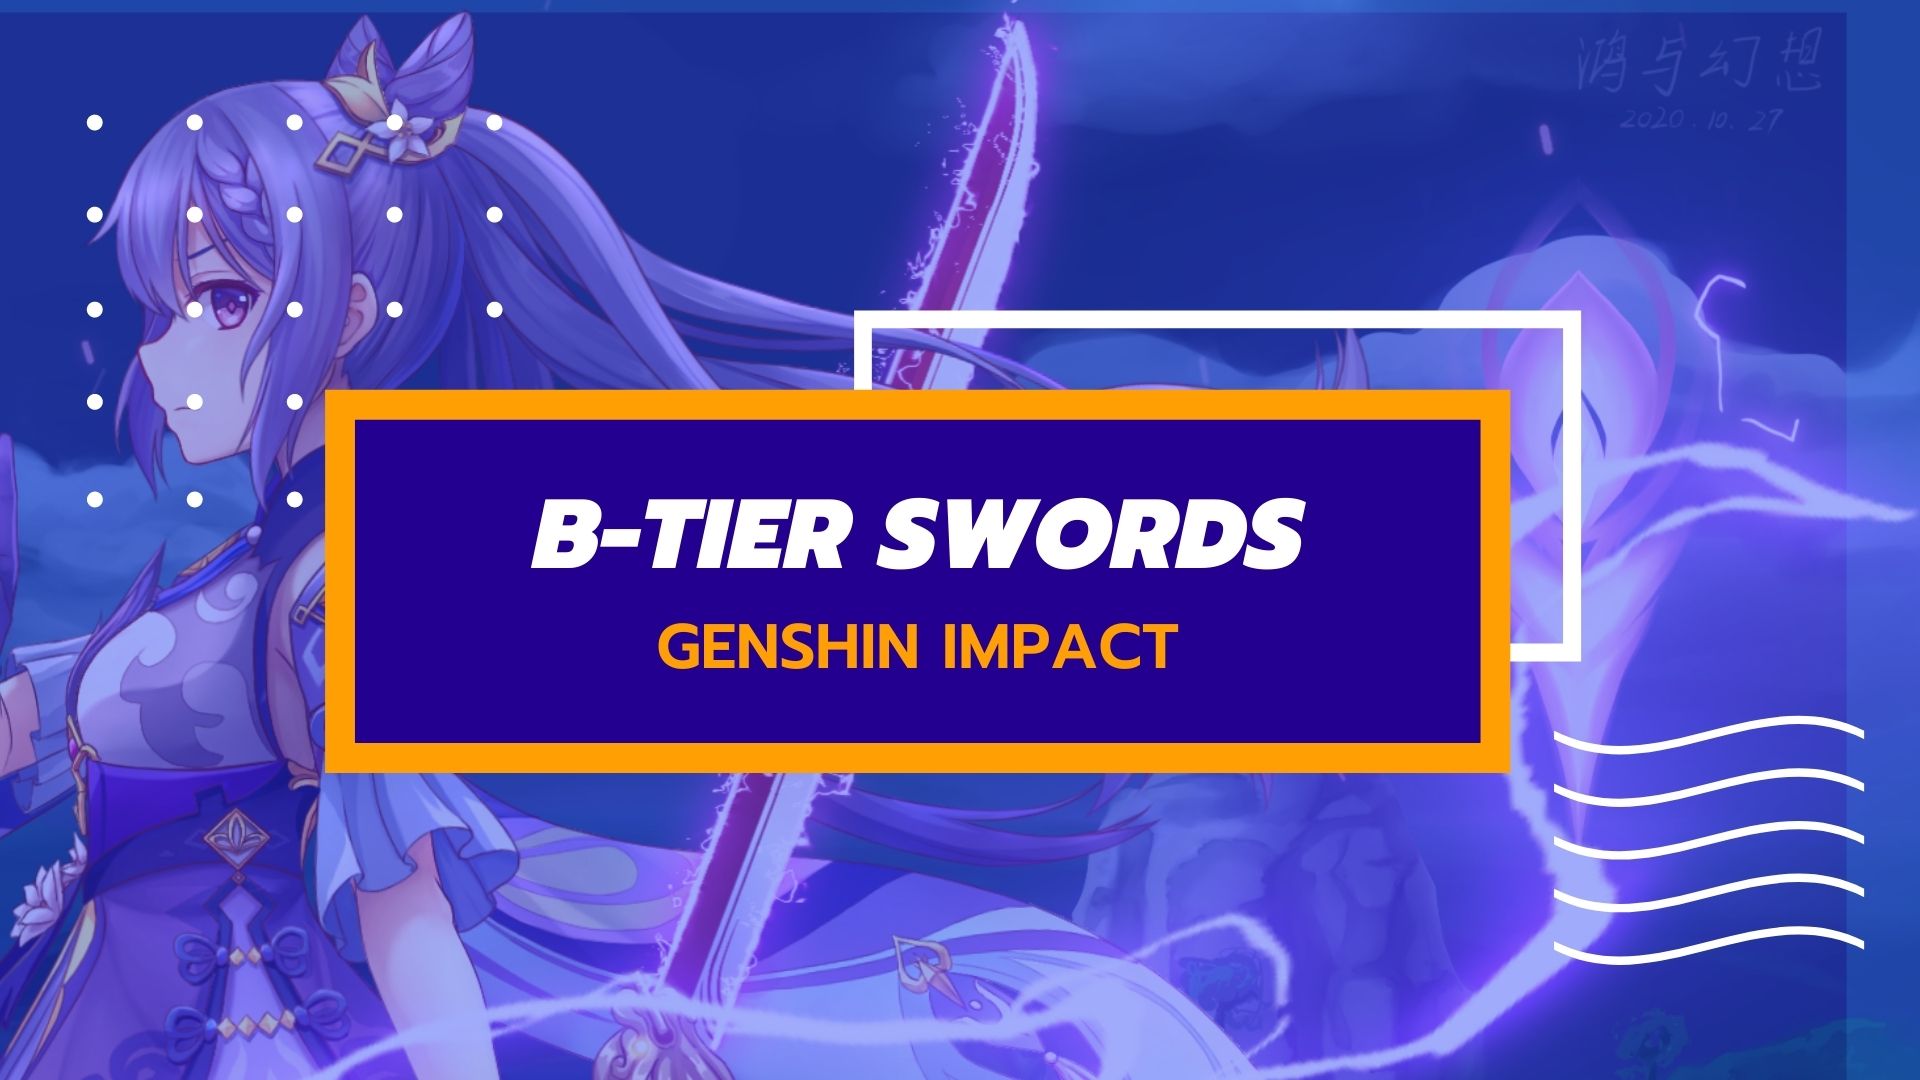 Elenco dei livelli delle armi di Genshin Impact B 